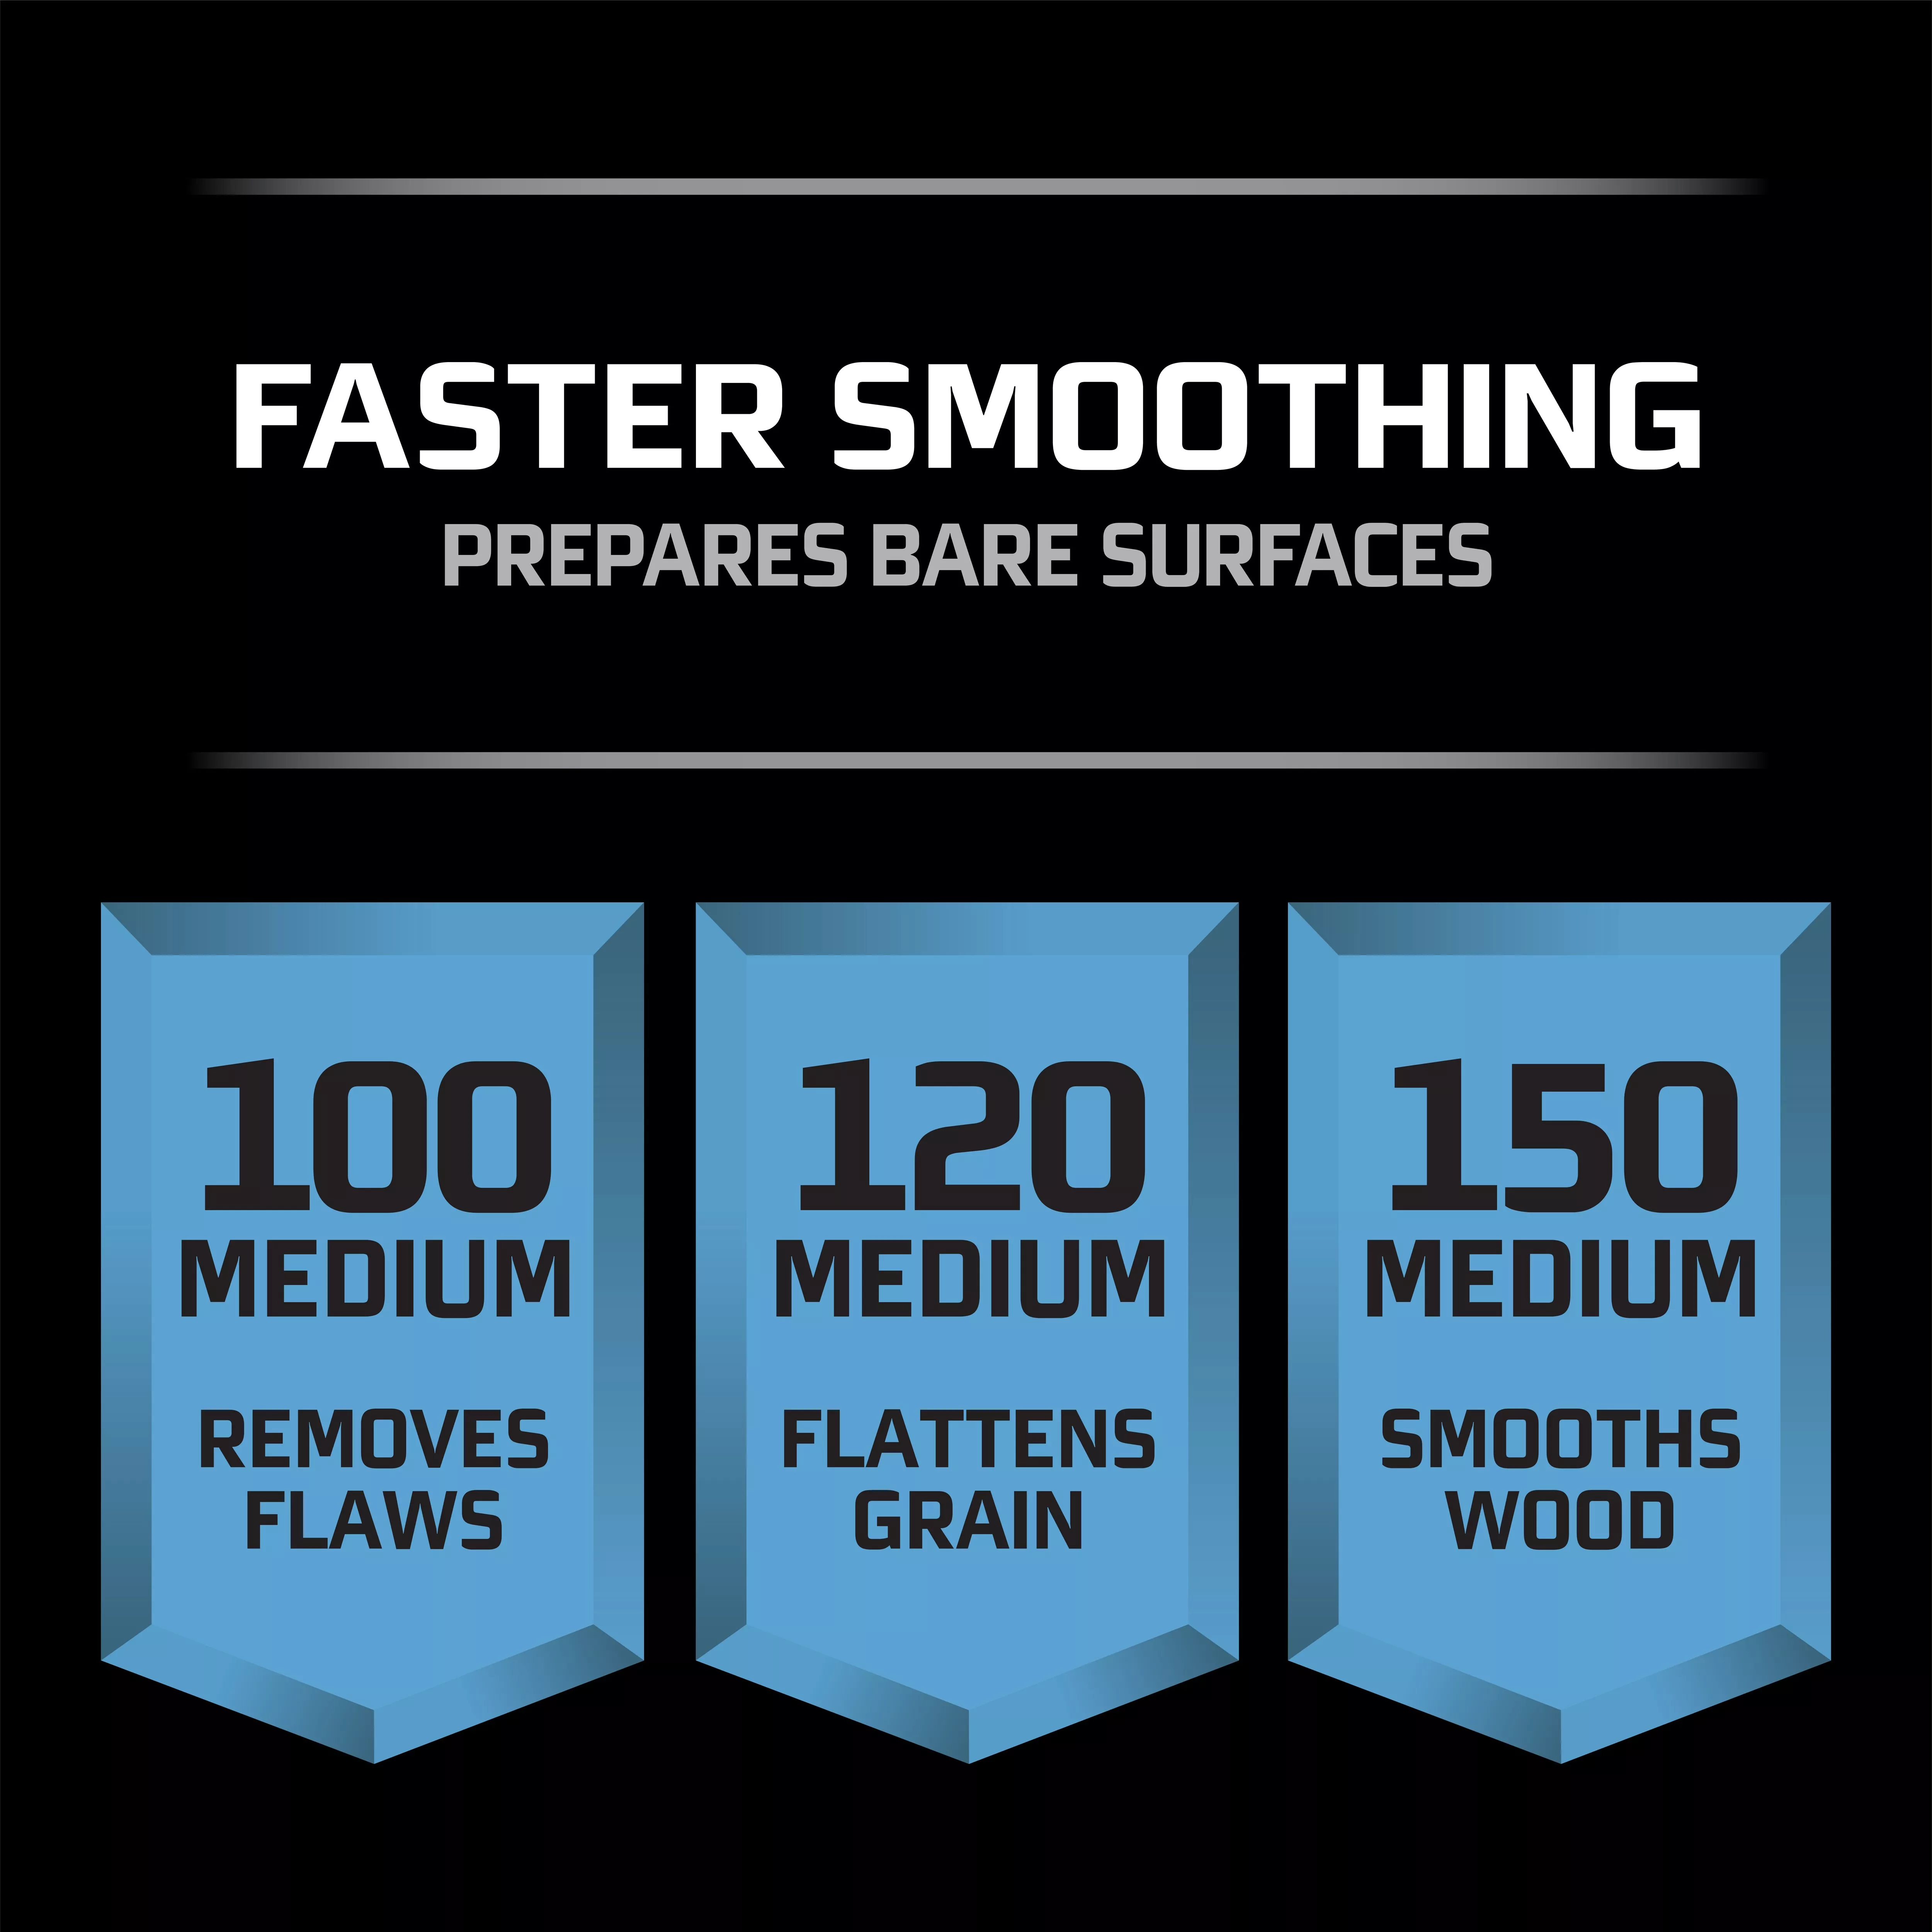 SKU 7010417804 | 3M™ Pro Grade Precision™ Faster Sanding Sanding Sheets 120 grit Medium